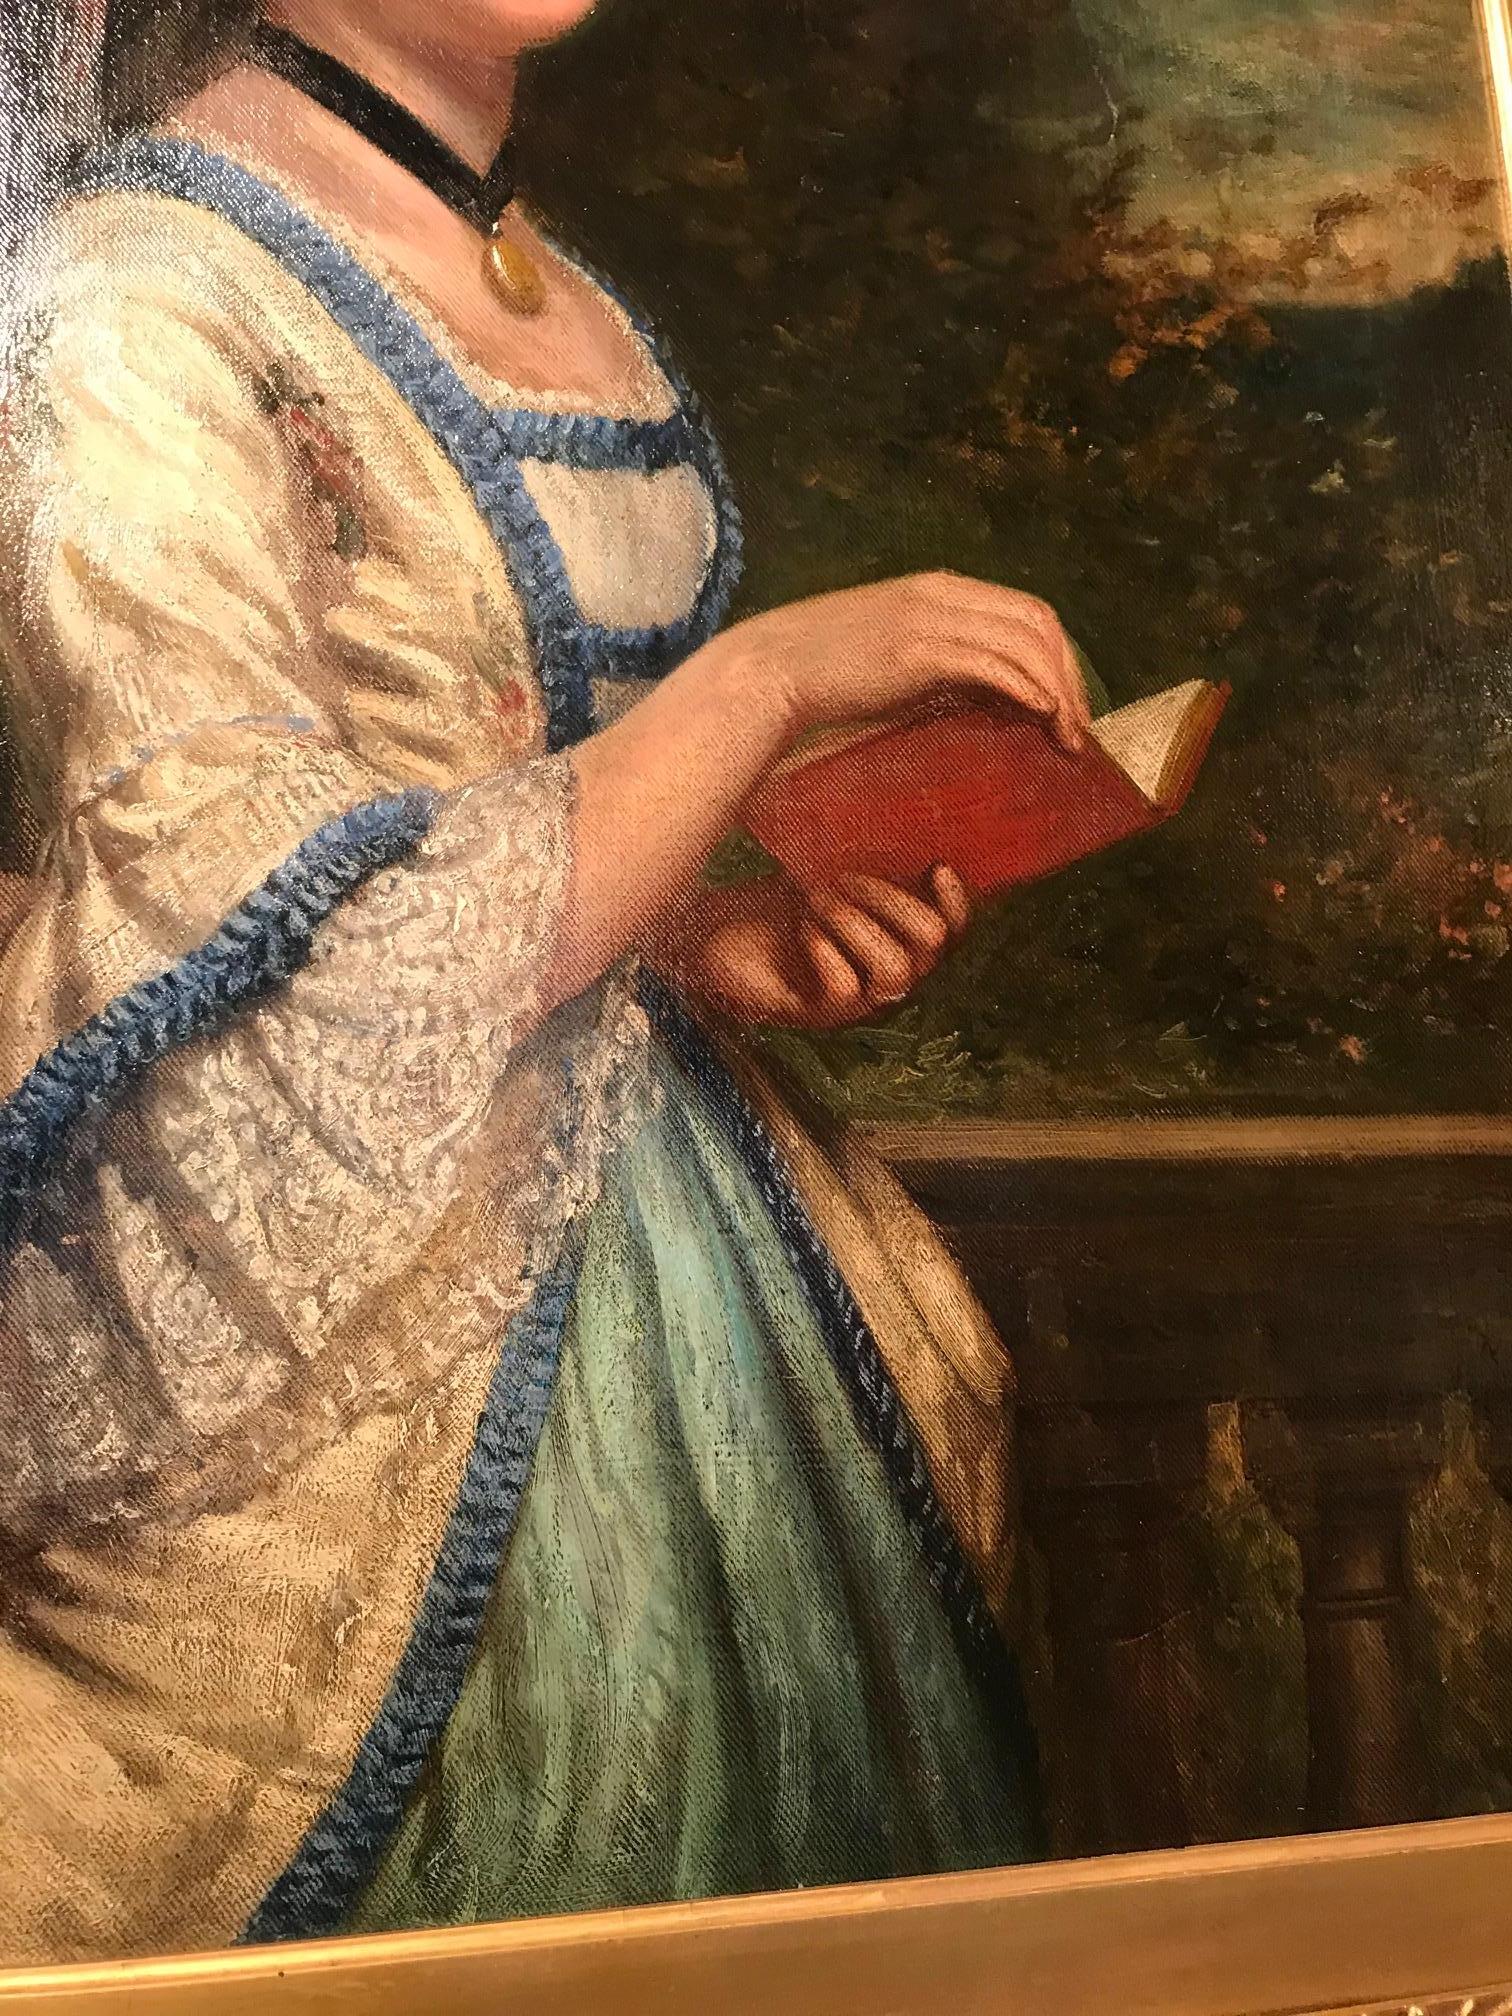 portrait d'une dame lisant dans une scène de jardin néoclassique, réalisé à l'huile sur toile au XIXe siècle.
Non signé